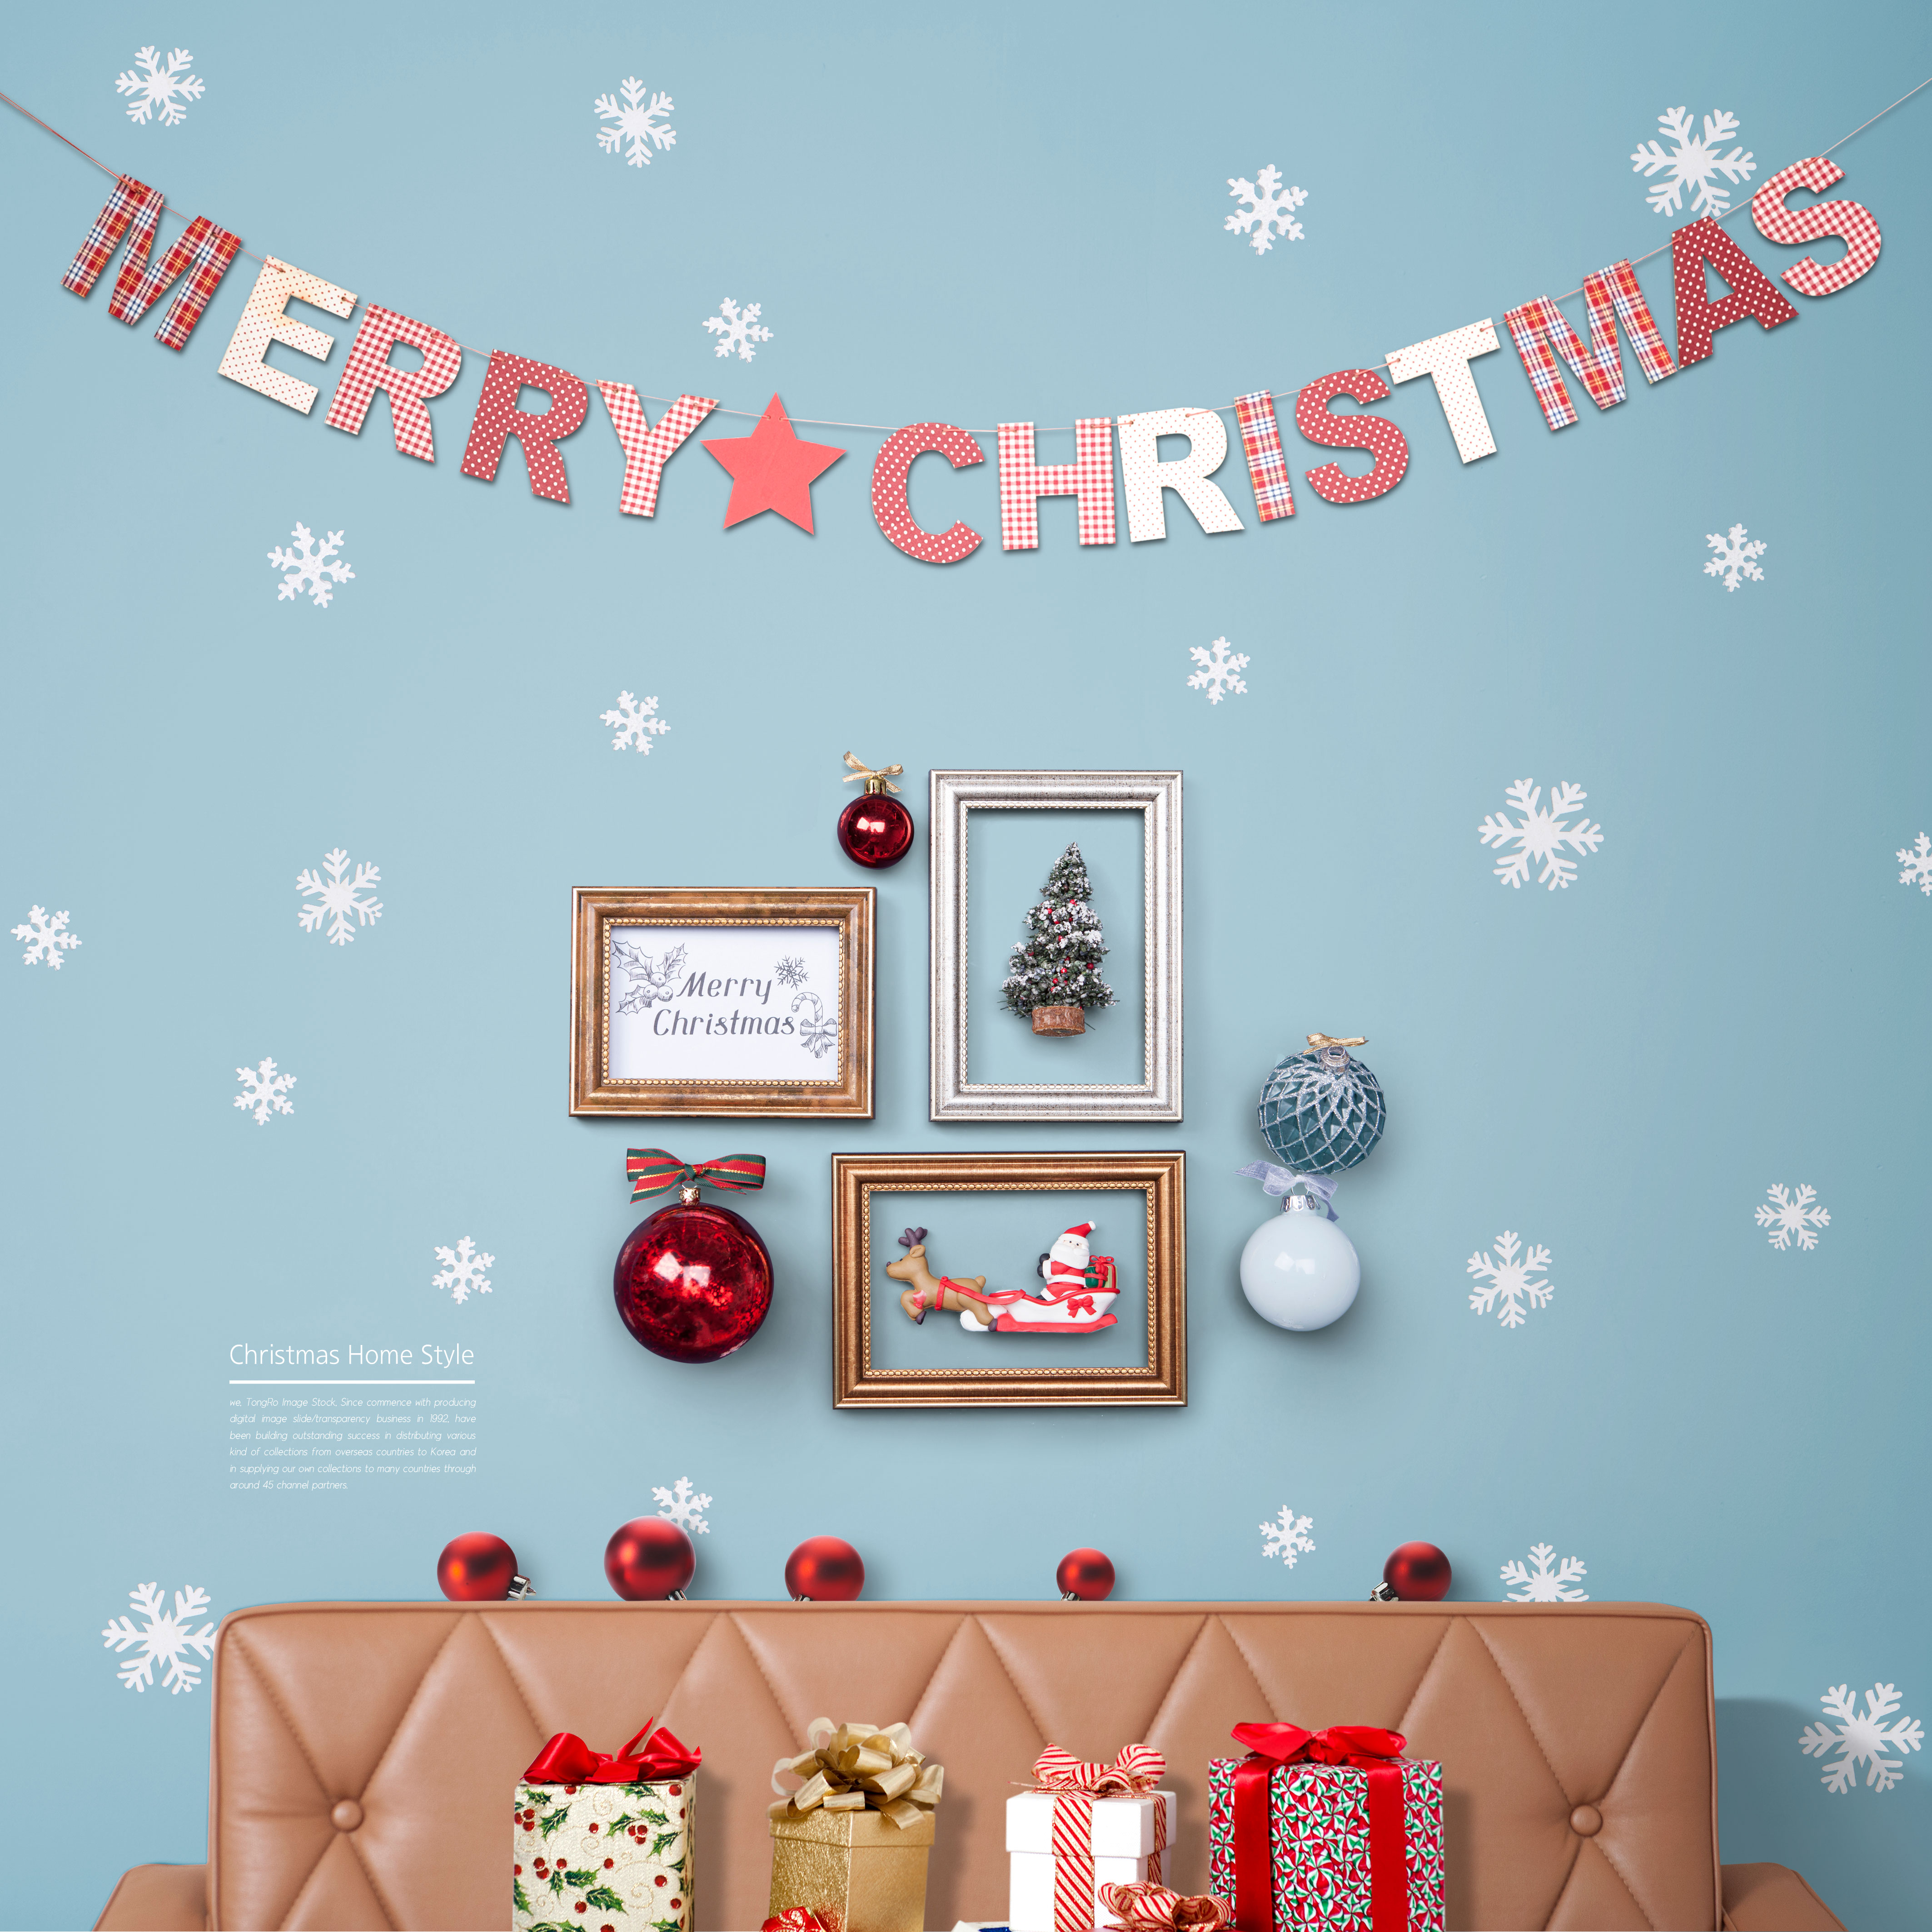 圣诞家居布置装饰海报psd素材合集V2插图